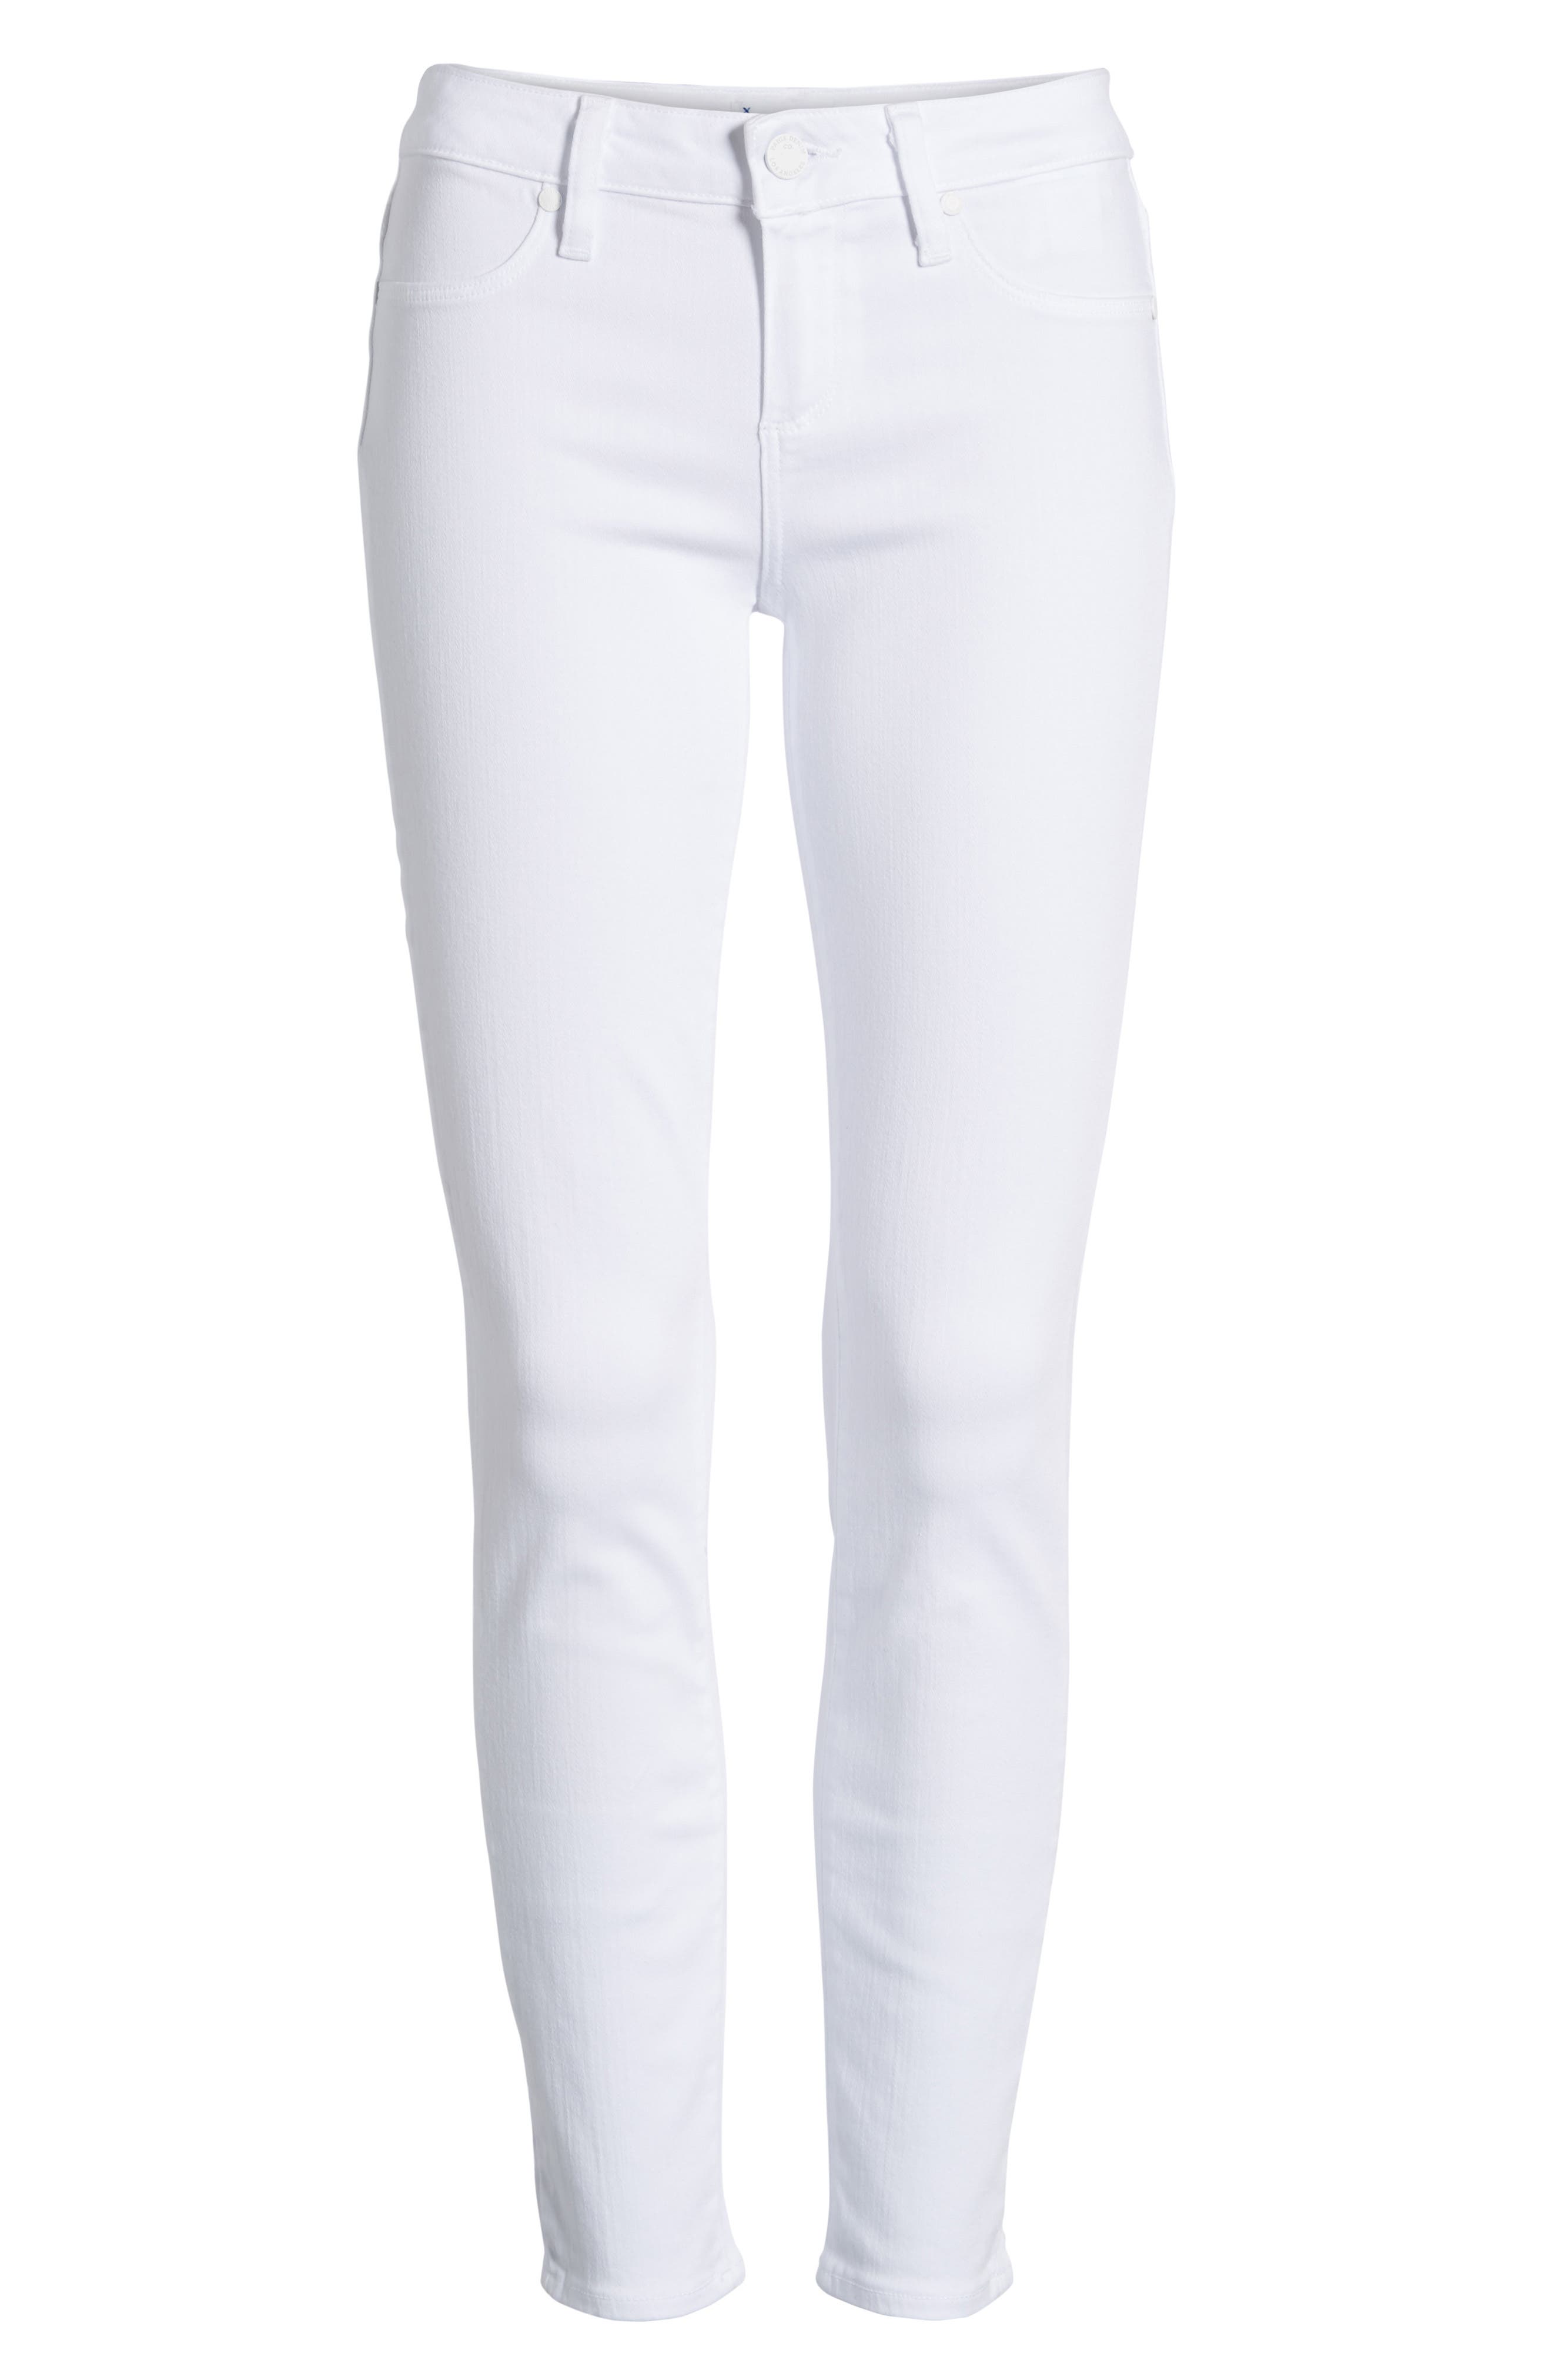 paige white jeans